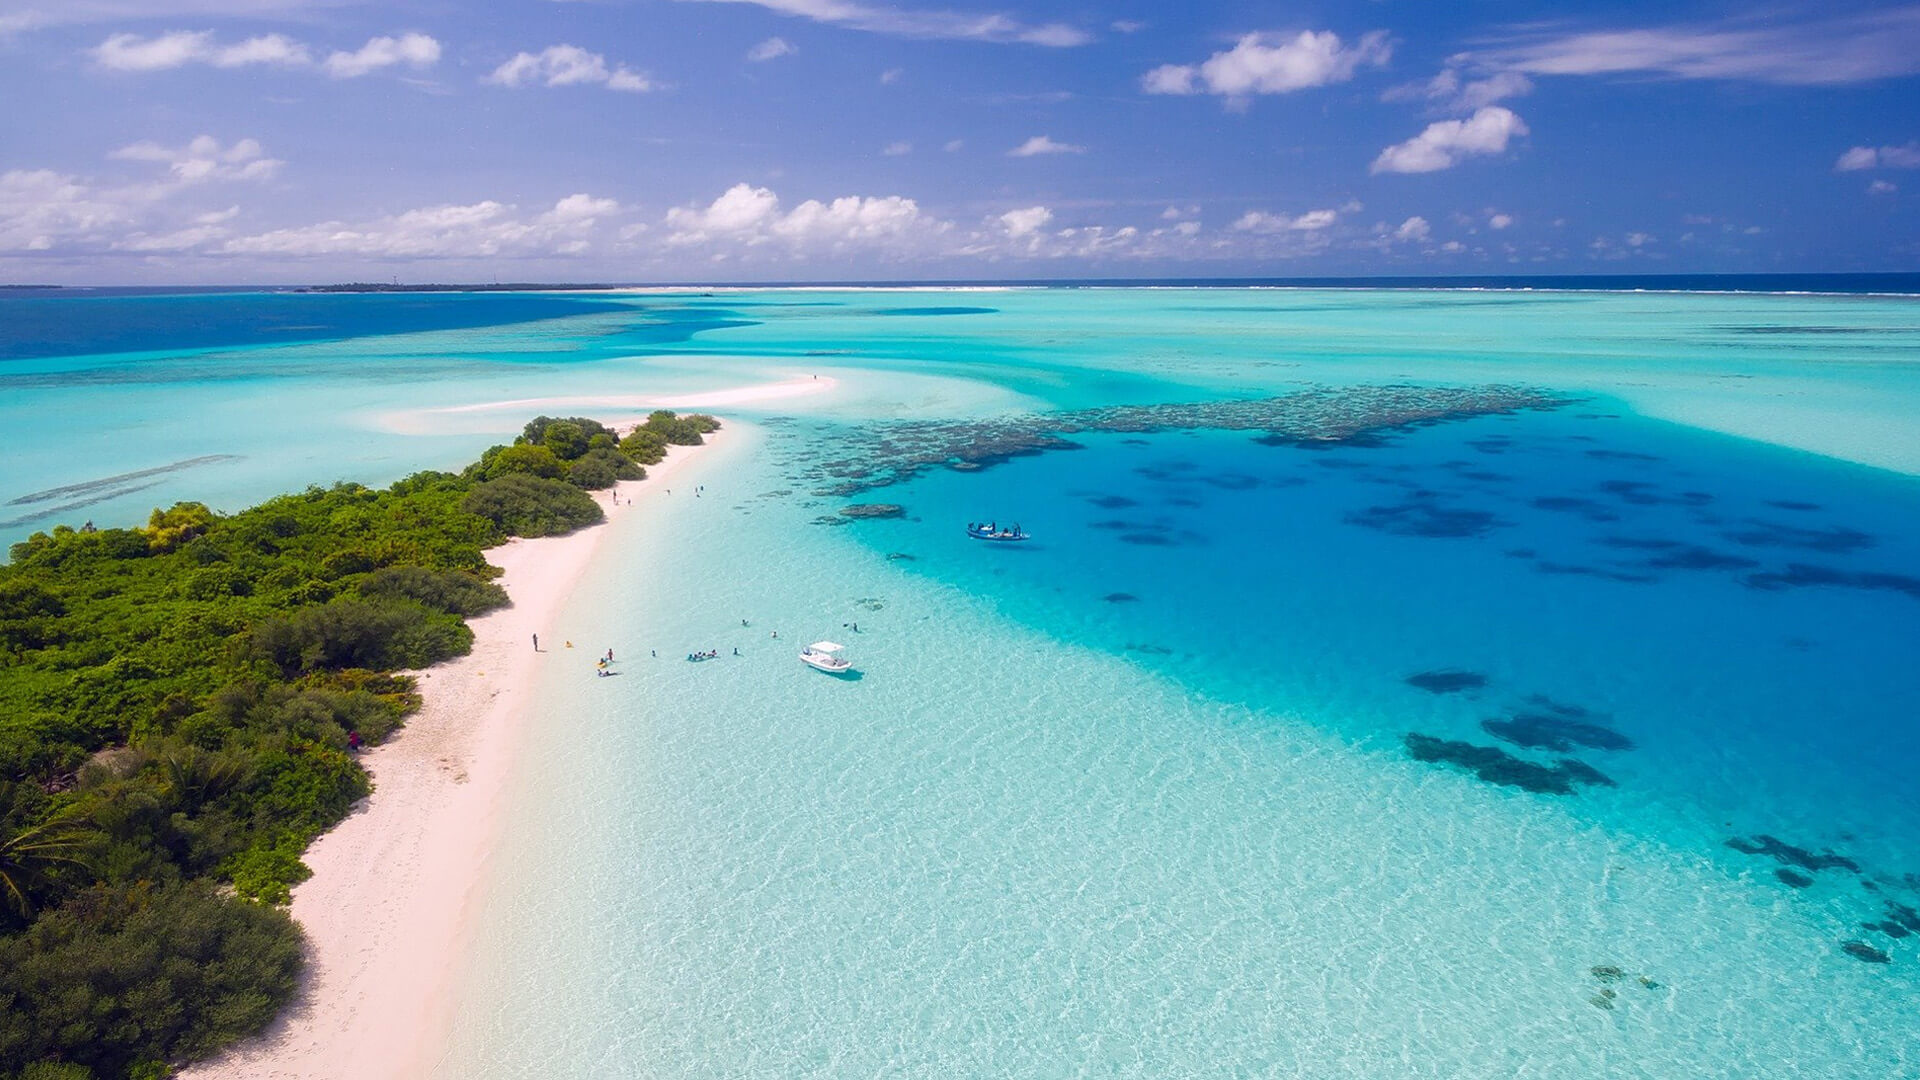 A beach in the Maldives